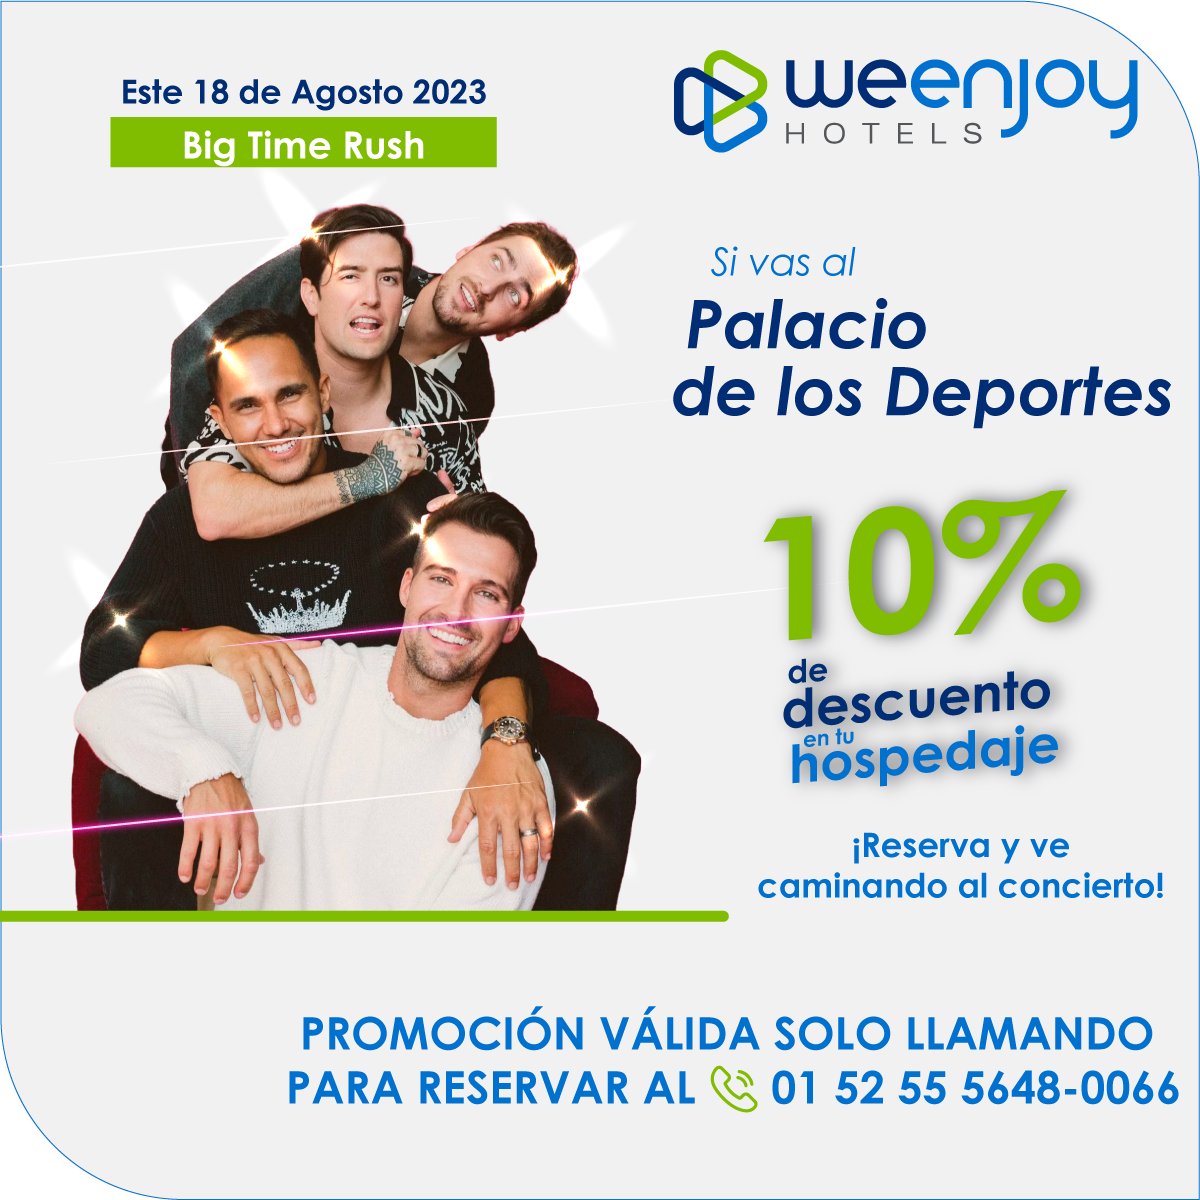 ¡En agosto viene #BigTimeRush al #PalacioDelosDeportes! Hospédate con nosotros y ve caminando a su concierto, estamos enfrente, ve caminando 🏟🚶🏨

🏨Reserva:
+52 55 56480066
weenjoyhotels.com.mx

#hotelescdmx #weenjoyhotels #hotelesmexico #weenjoymexico